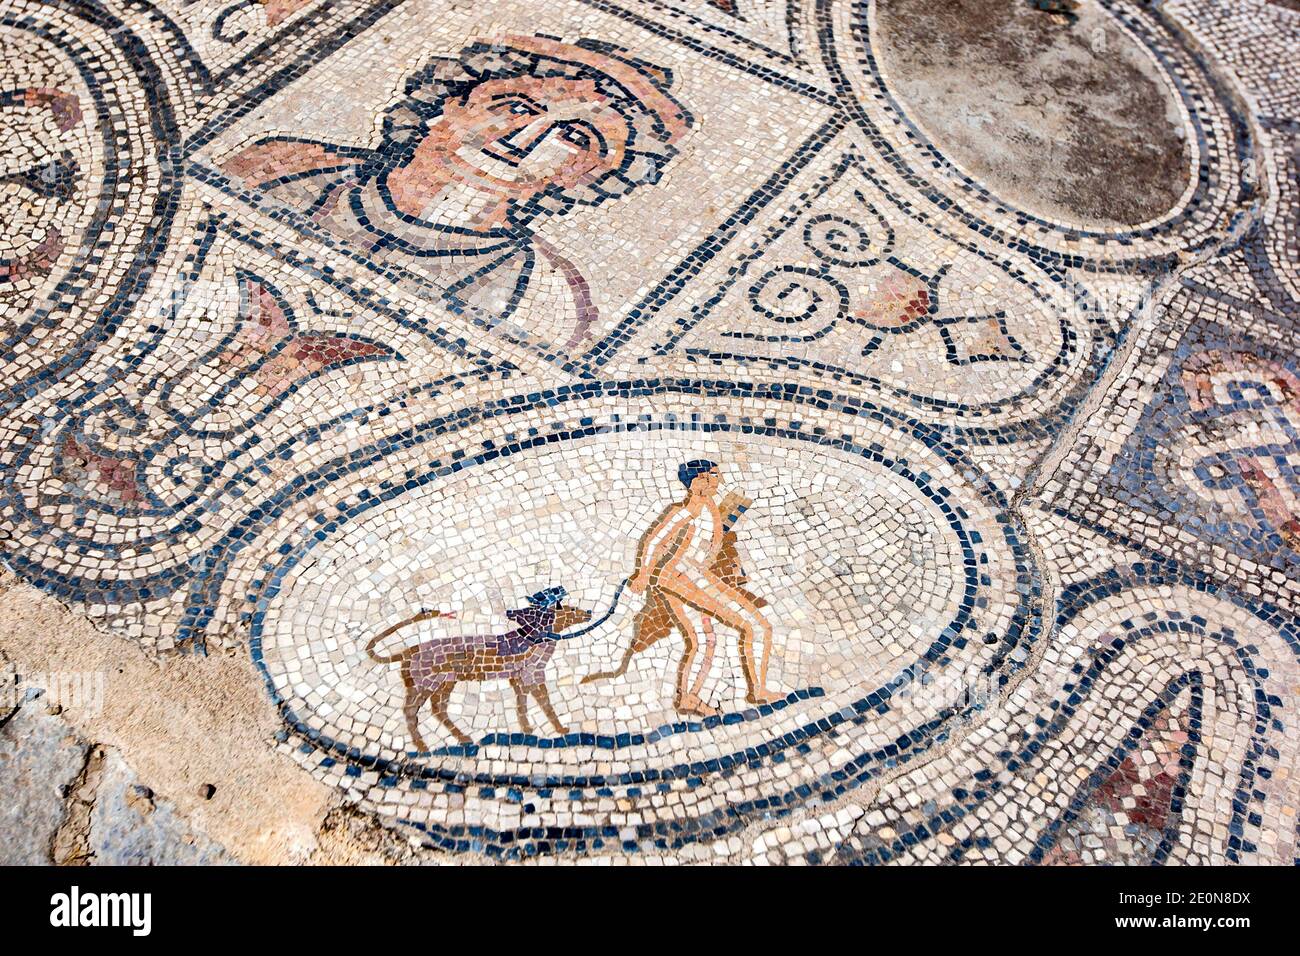 Une mosaïque dans la Maison des ouvriers d'Hercules à Volubilis au Maroc. Il comprend Hercules de capture et de retour avec son animal Cerberus. Banque D'Images